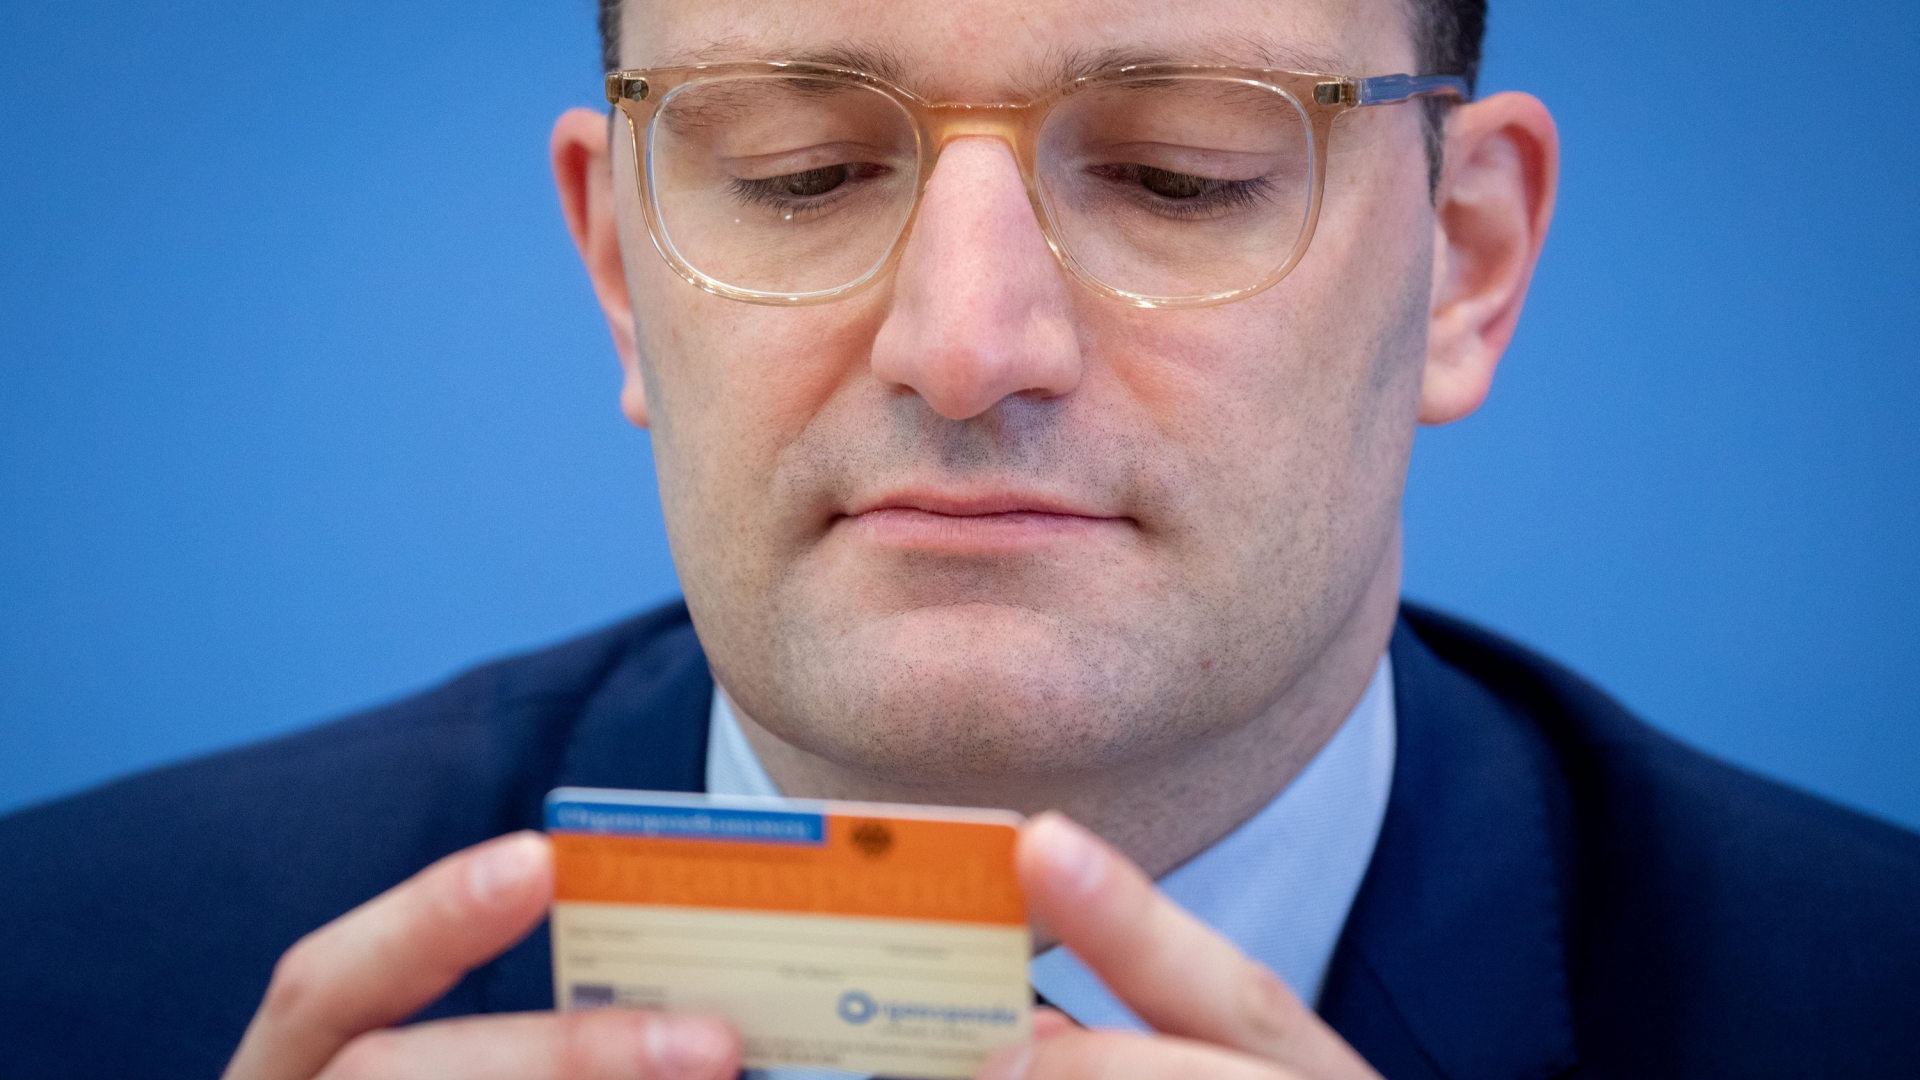 Gesundheitsminister Spahn hält einen Organspendeausweis in den Händen | dpa